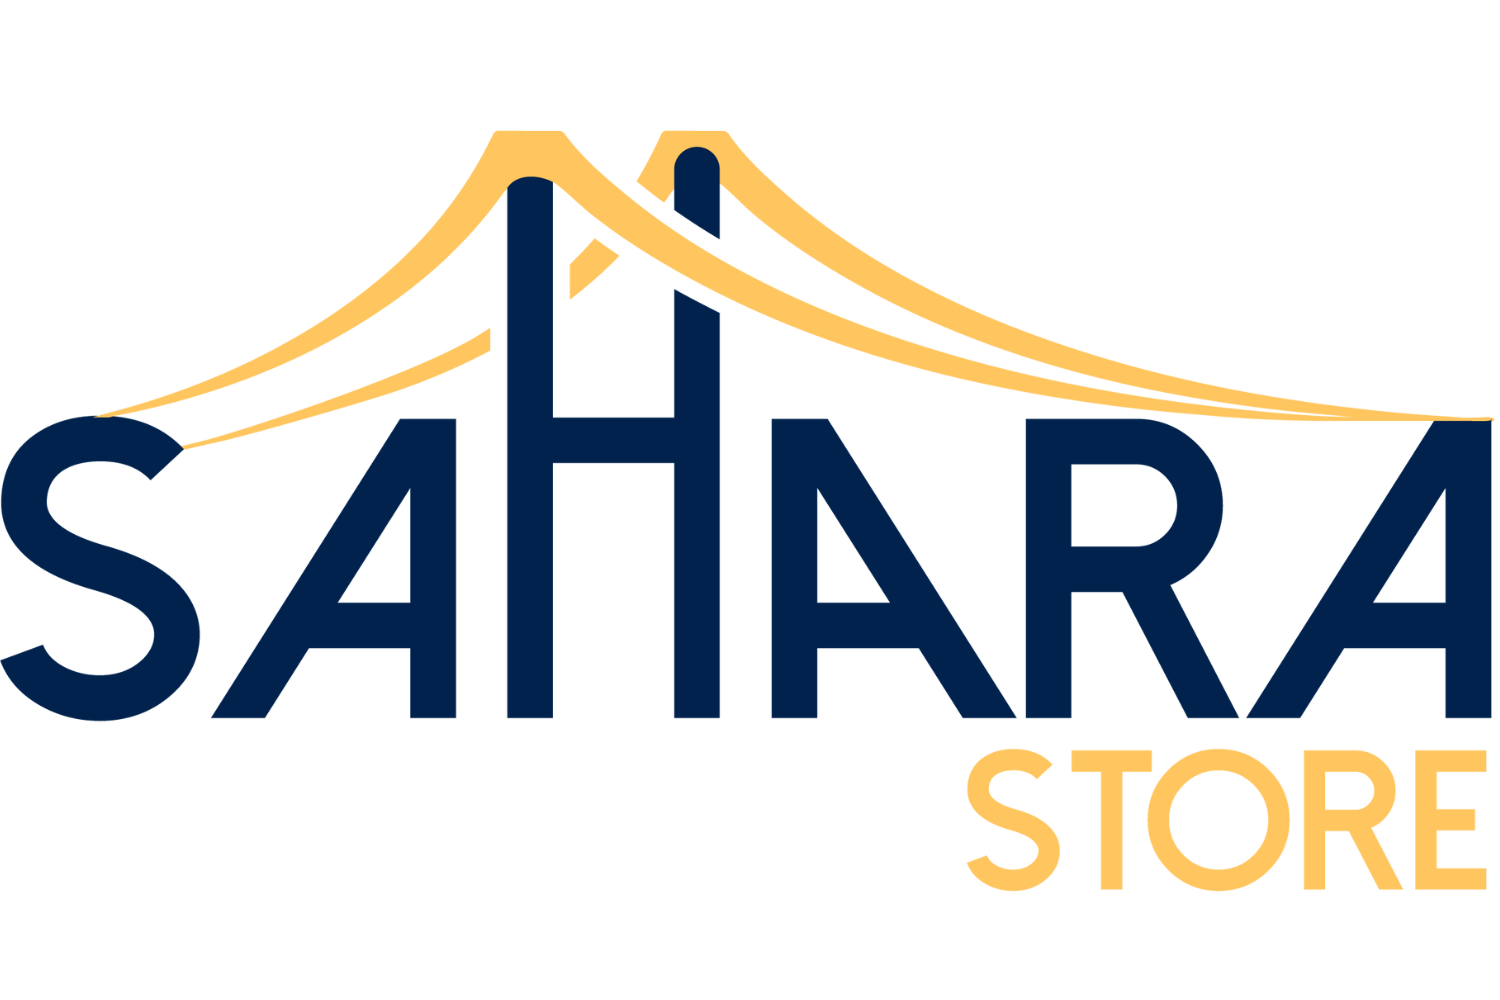 Sahara Store